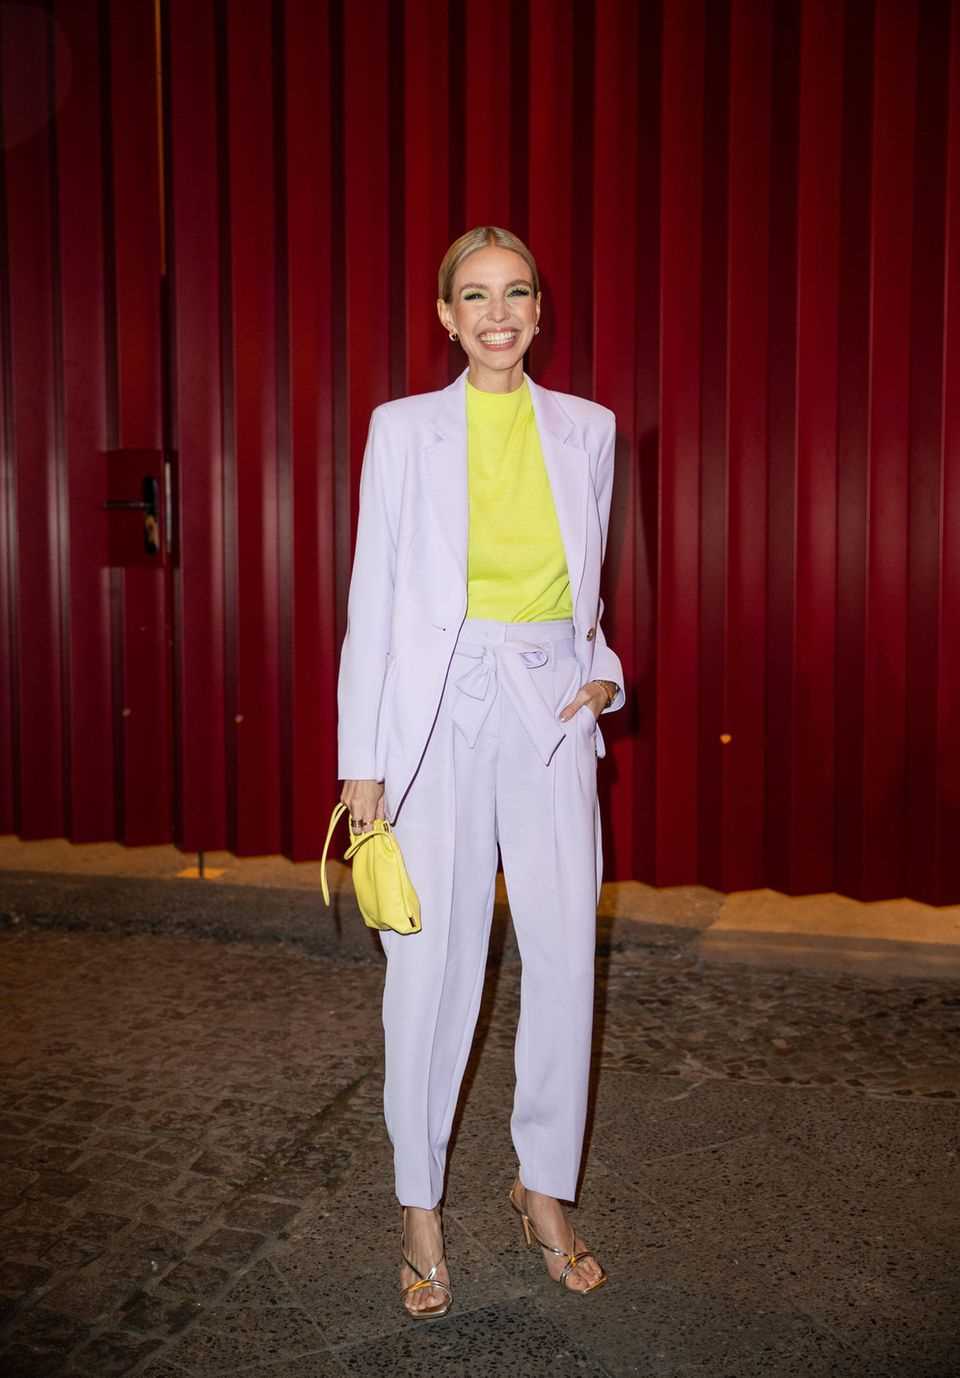 Influencer Leonie Hanne loves neon yellow